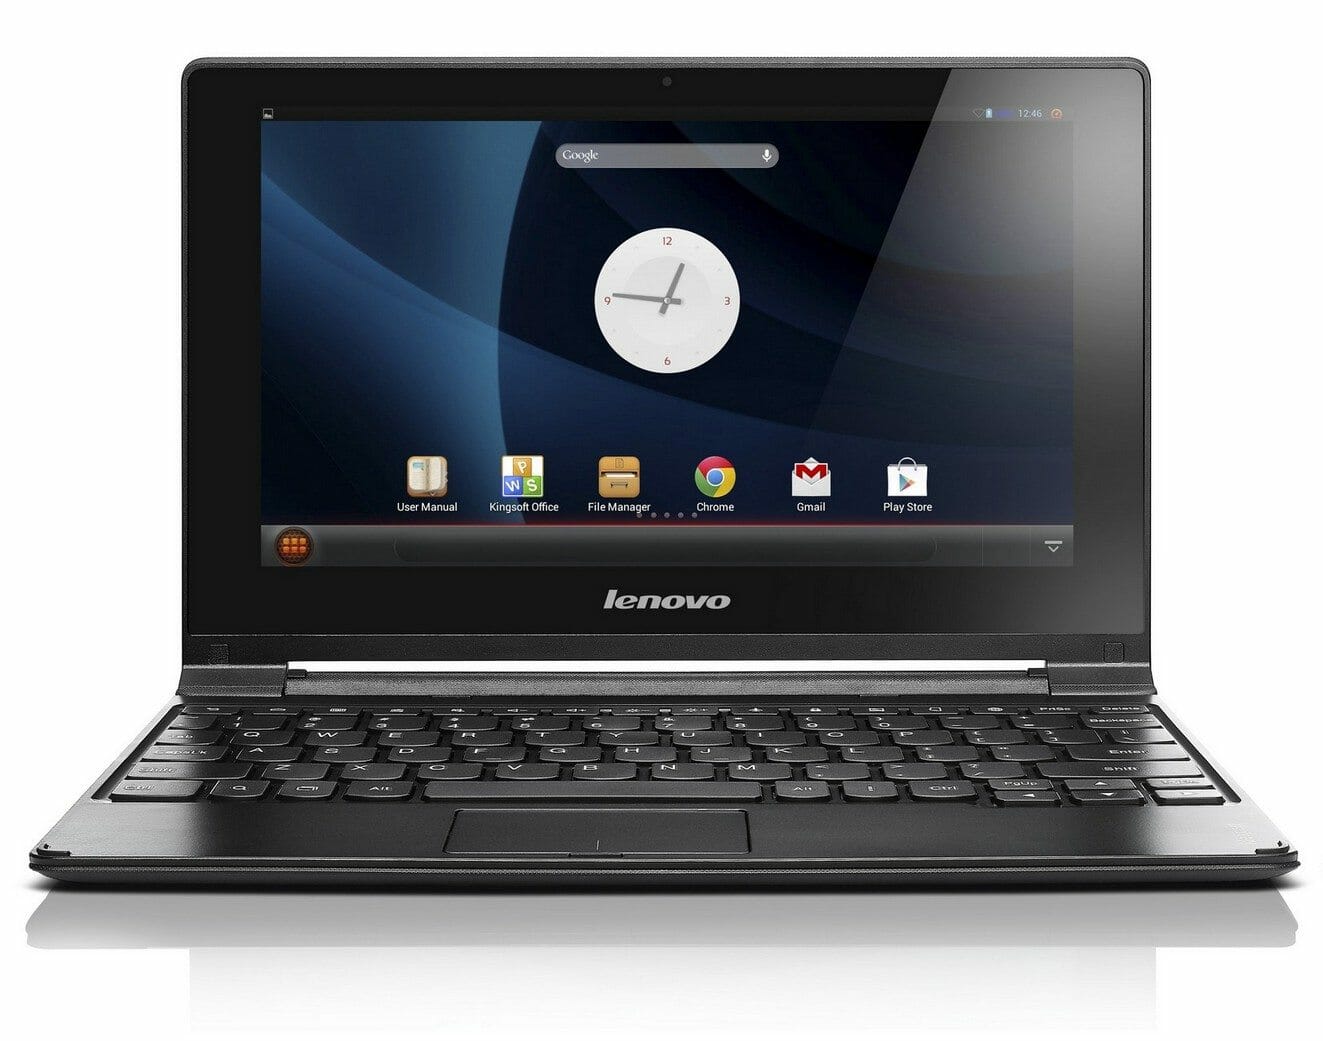 Lenovo oferecerá PCs Android com um multifuncional que pode incluir um Core i9